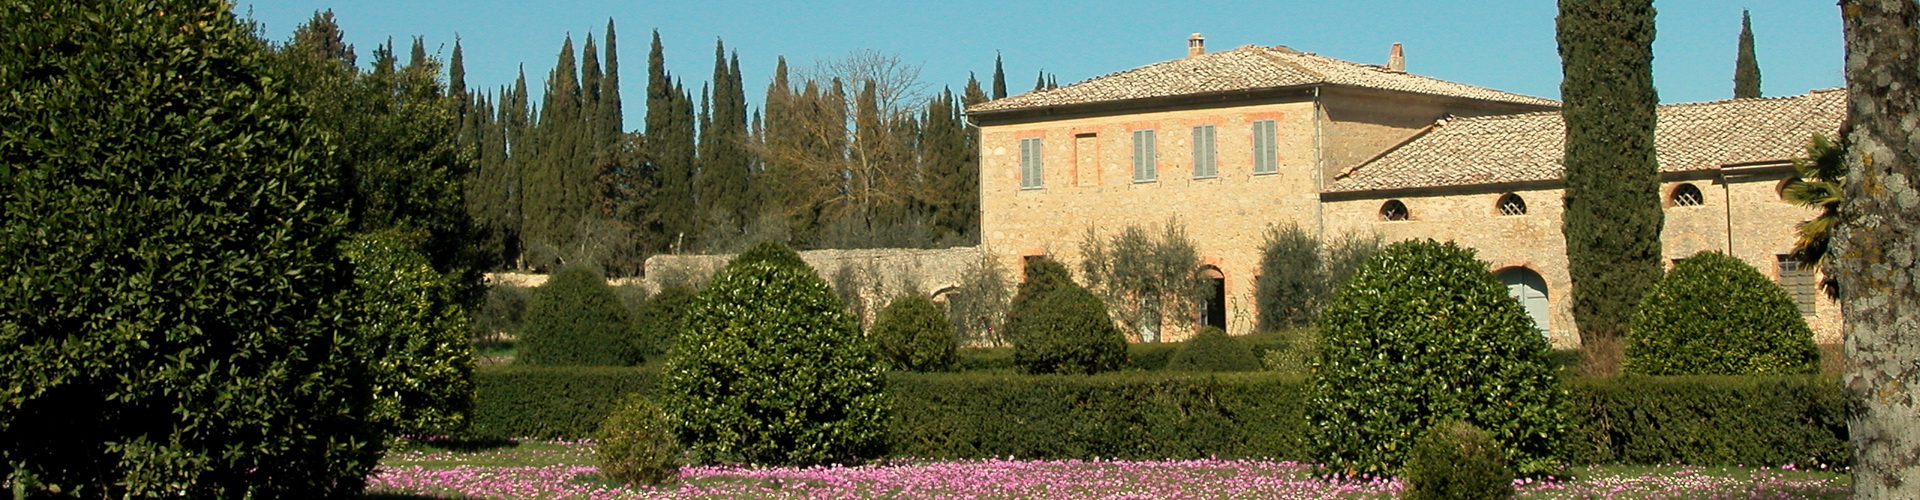 villa Ballati nel parco del Castello di Grotti